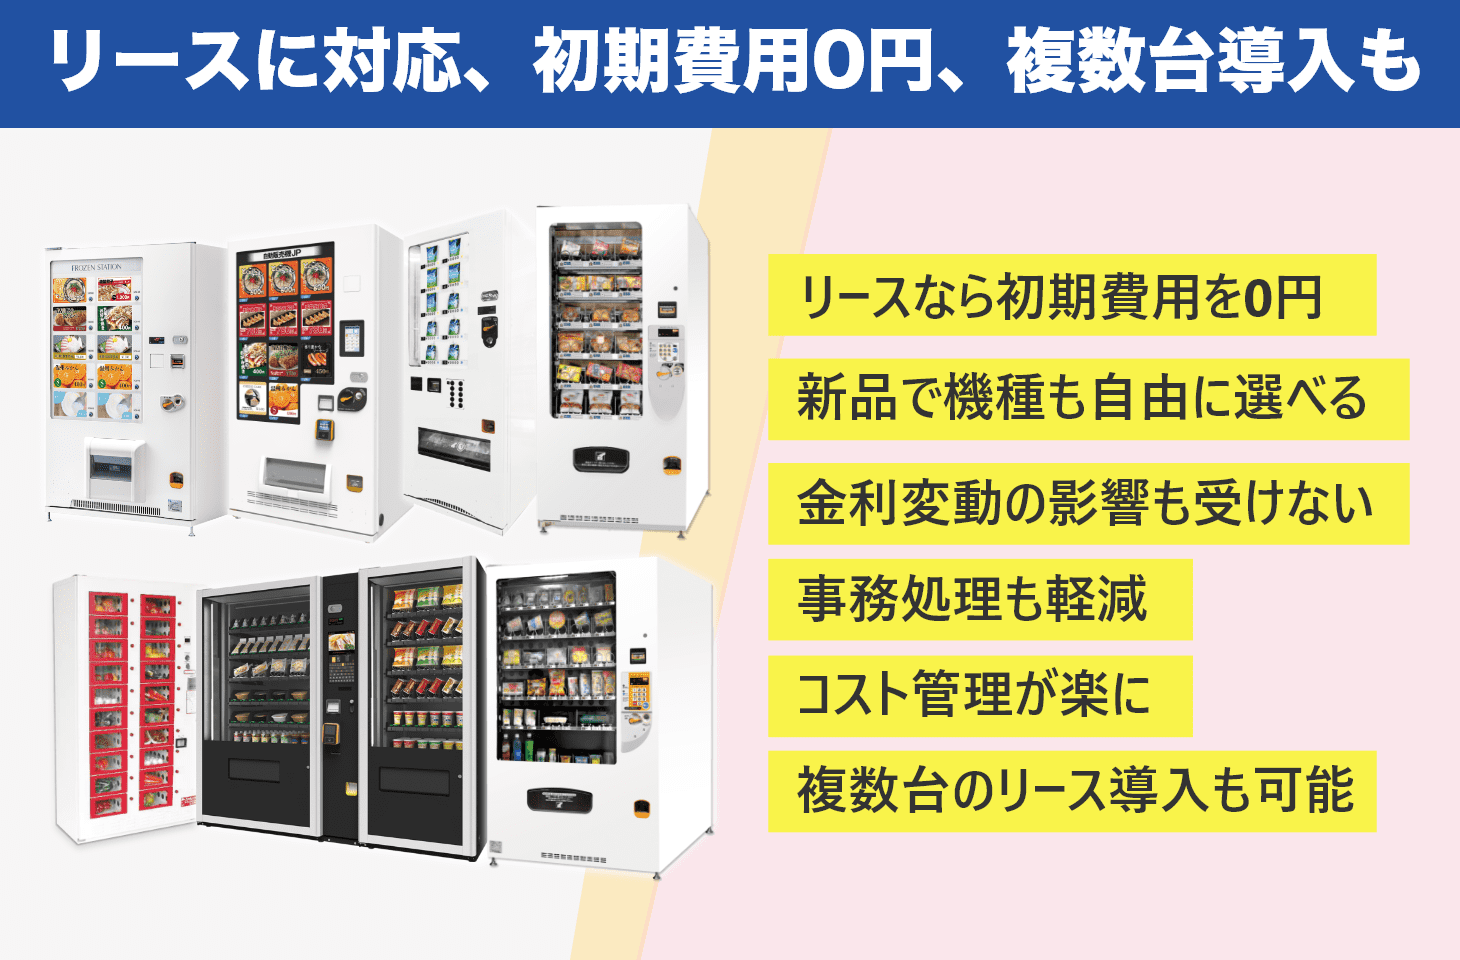 リースに対応で初期費用0円に、自動販売機型店舗なら複数台導入もリースで可能